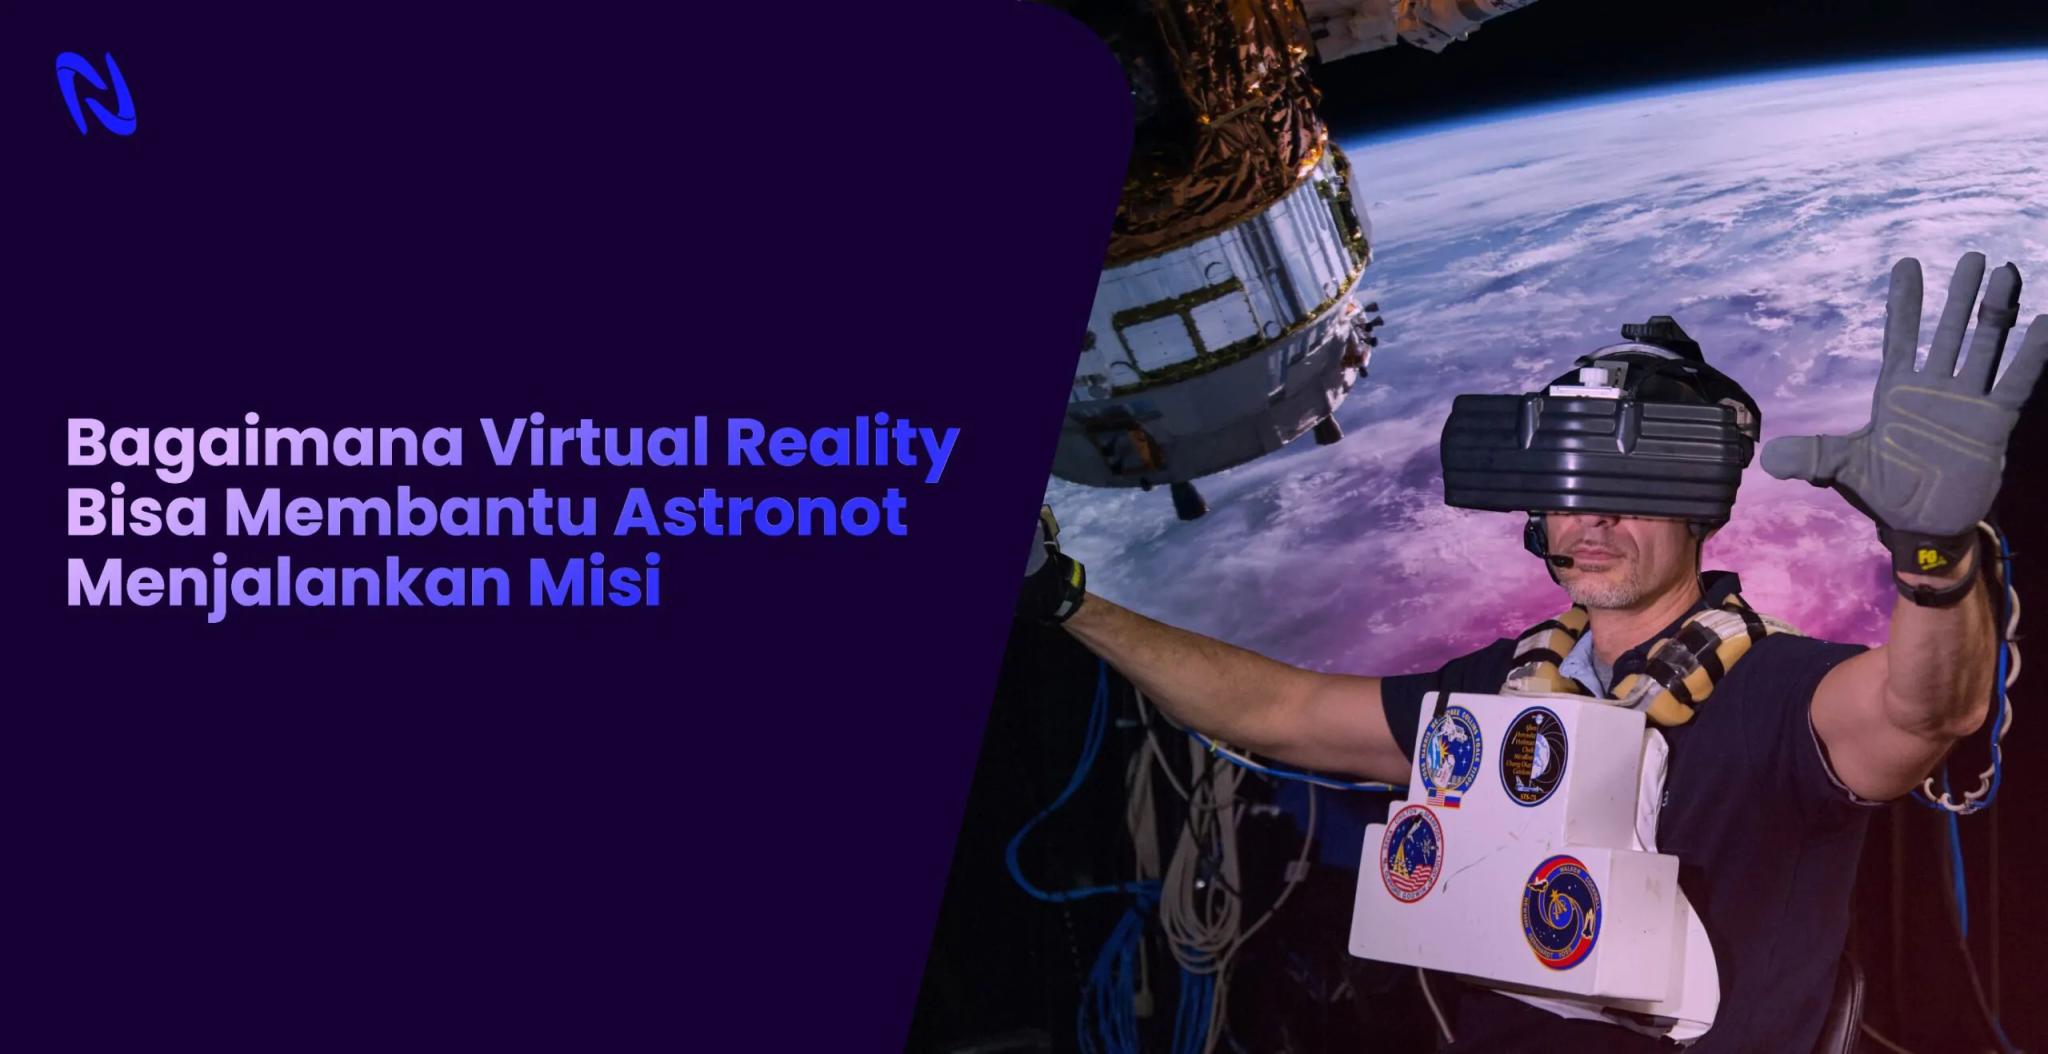 Bagaimana Virtual Reality Bisa Membantu Astronot Menjalankan Misi